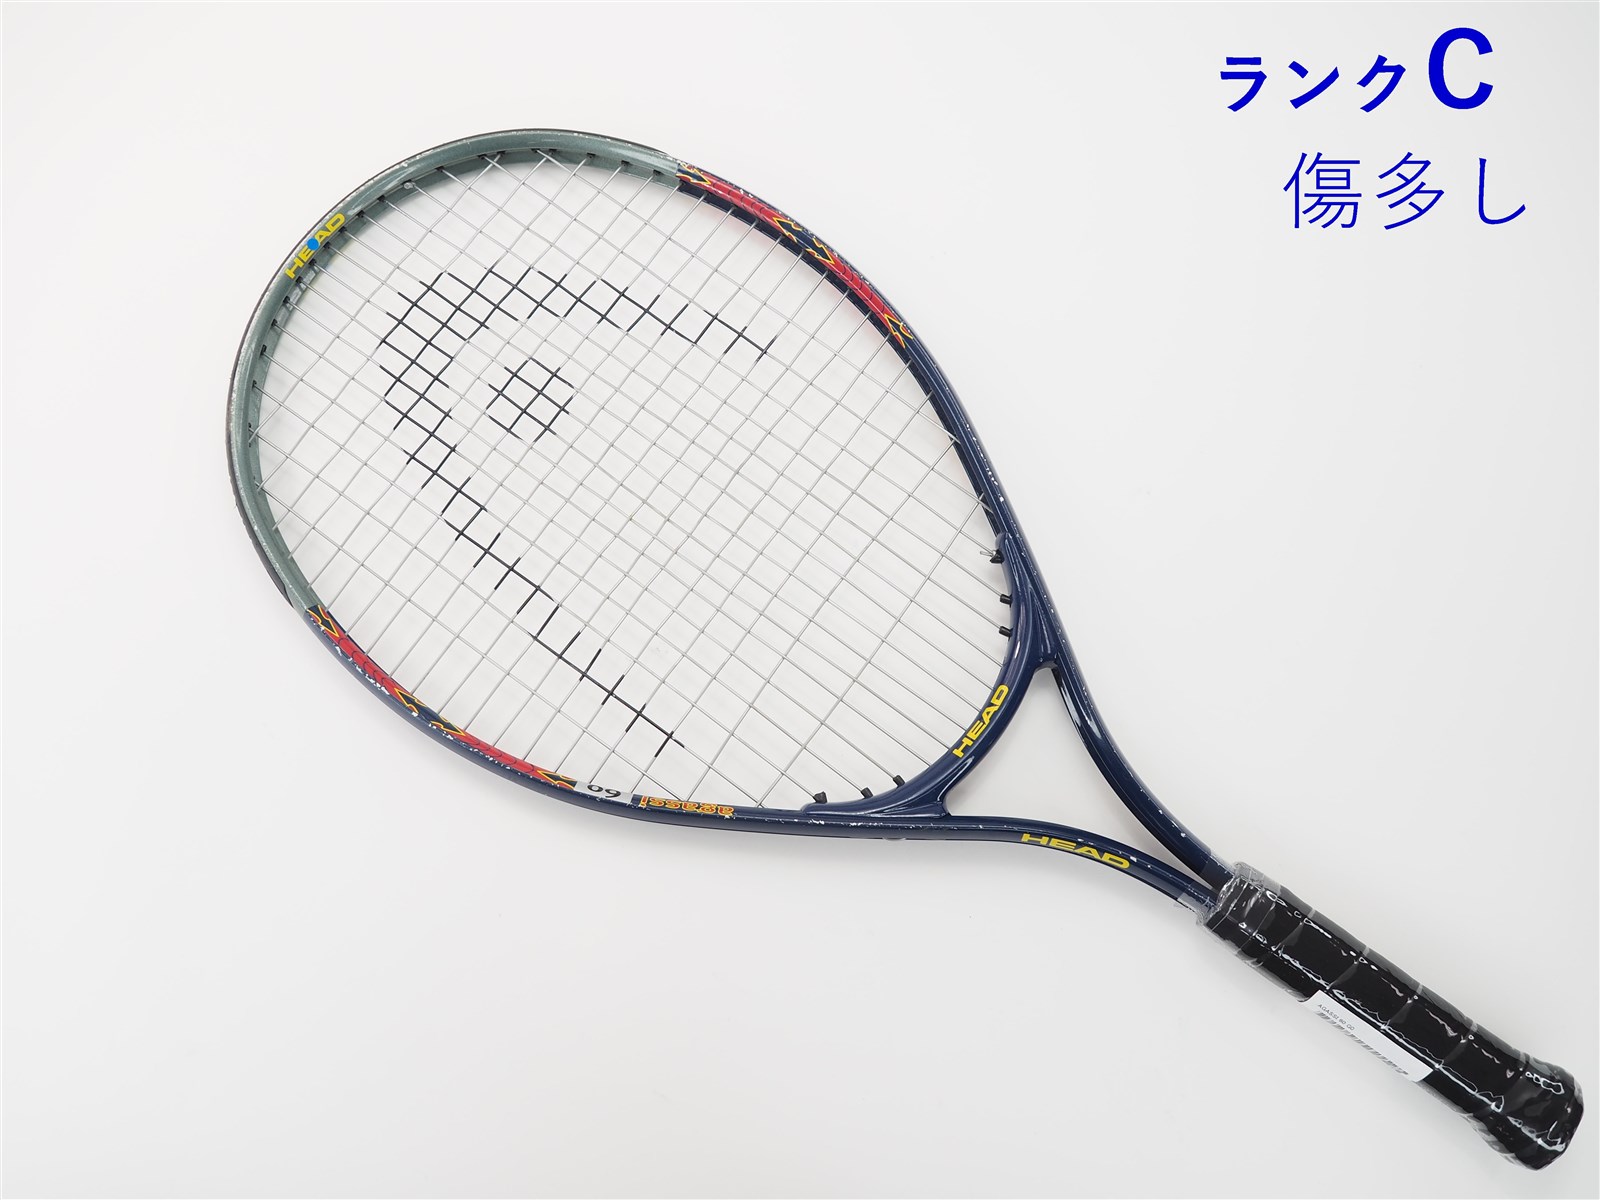 250ｇ張り上げガット状態テニスラケット ウィルソン トライアド 6.0 95 2003年モデル (G3)WILSON TRIAD 6.0 95 2003